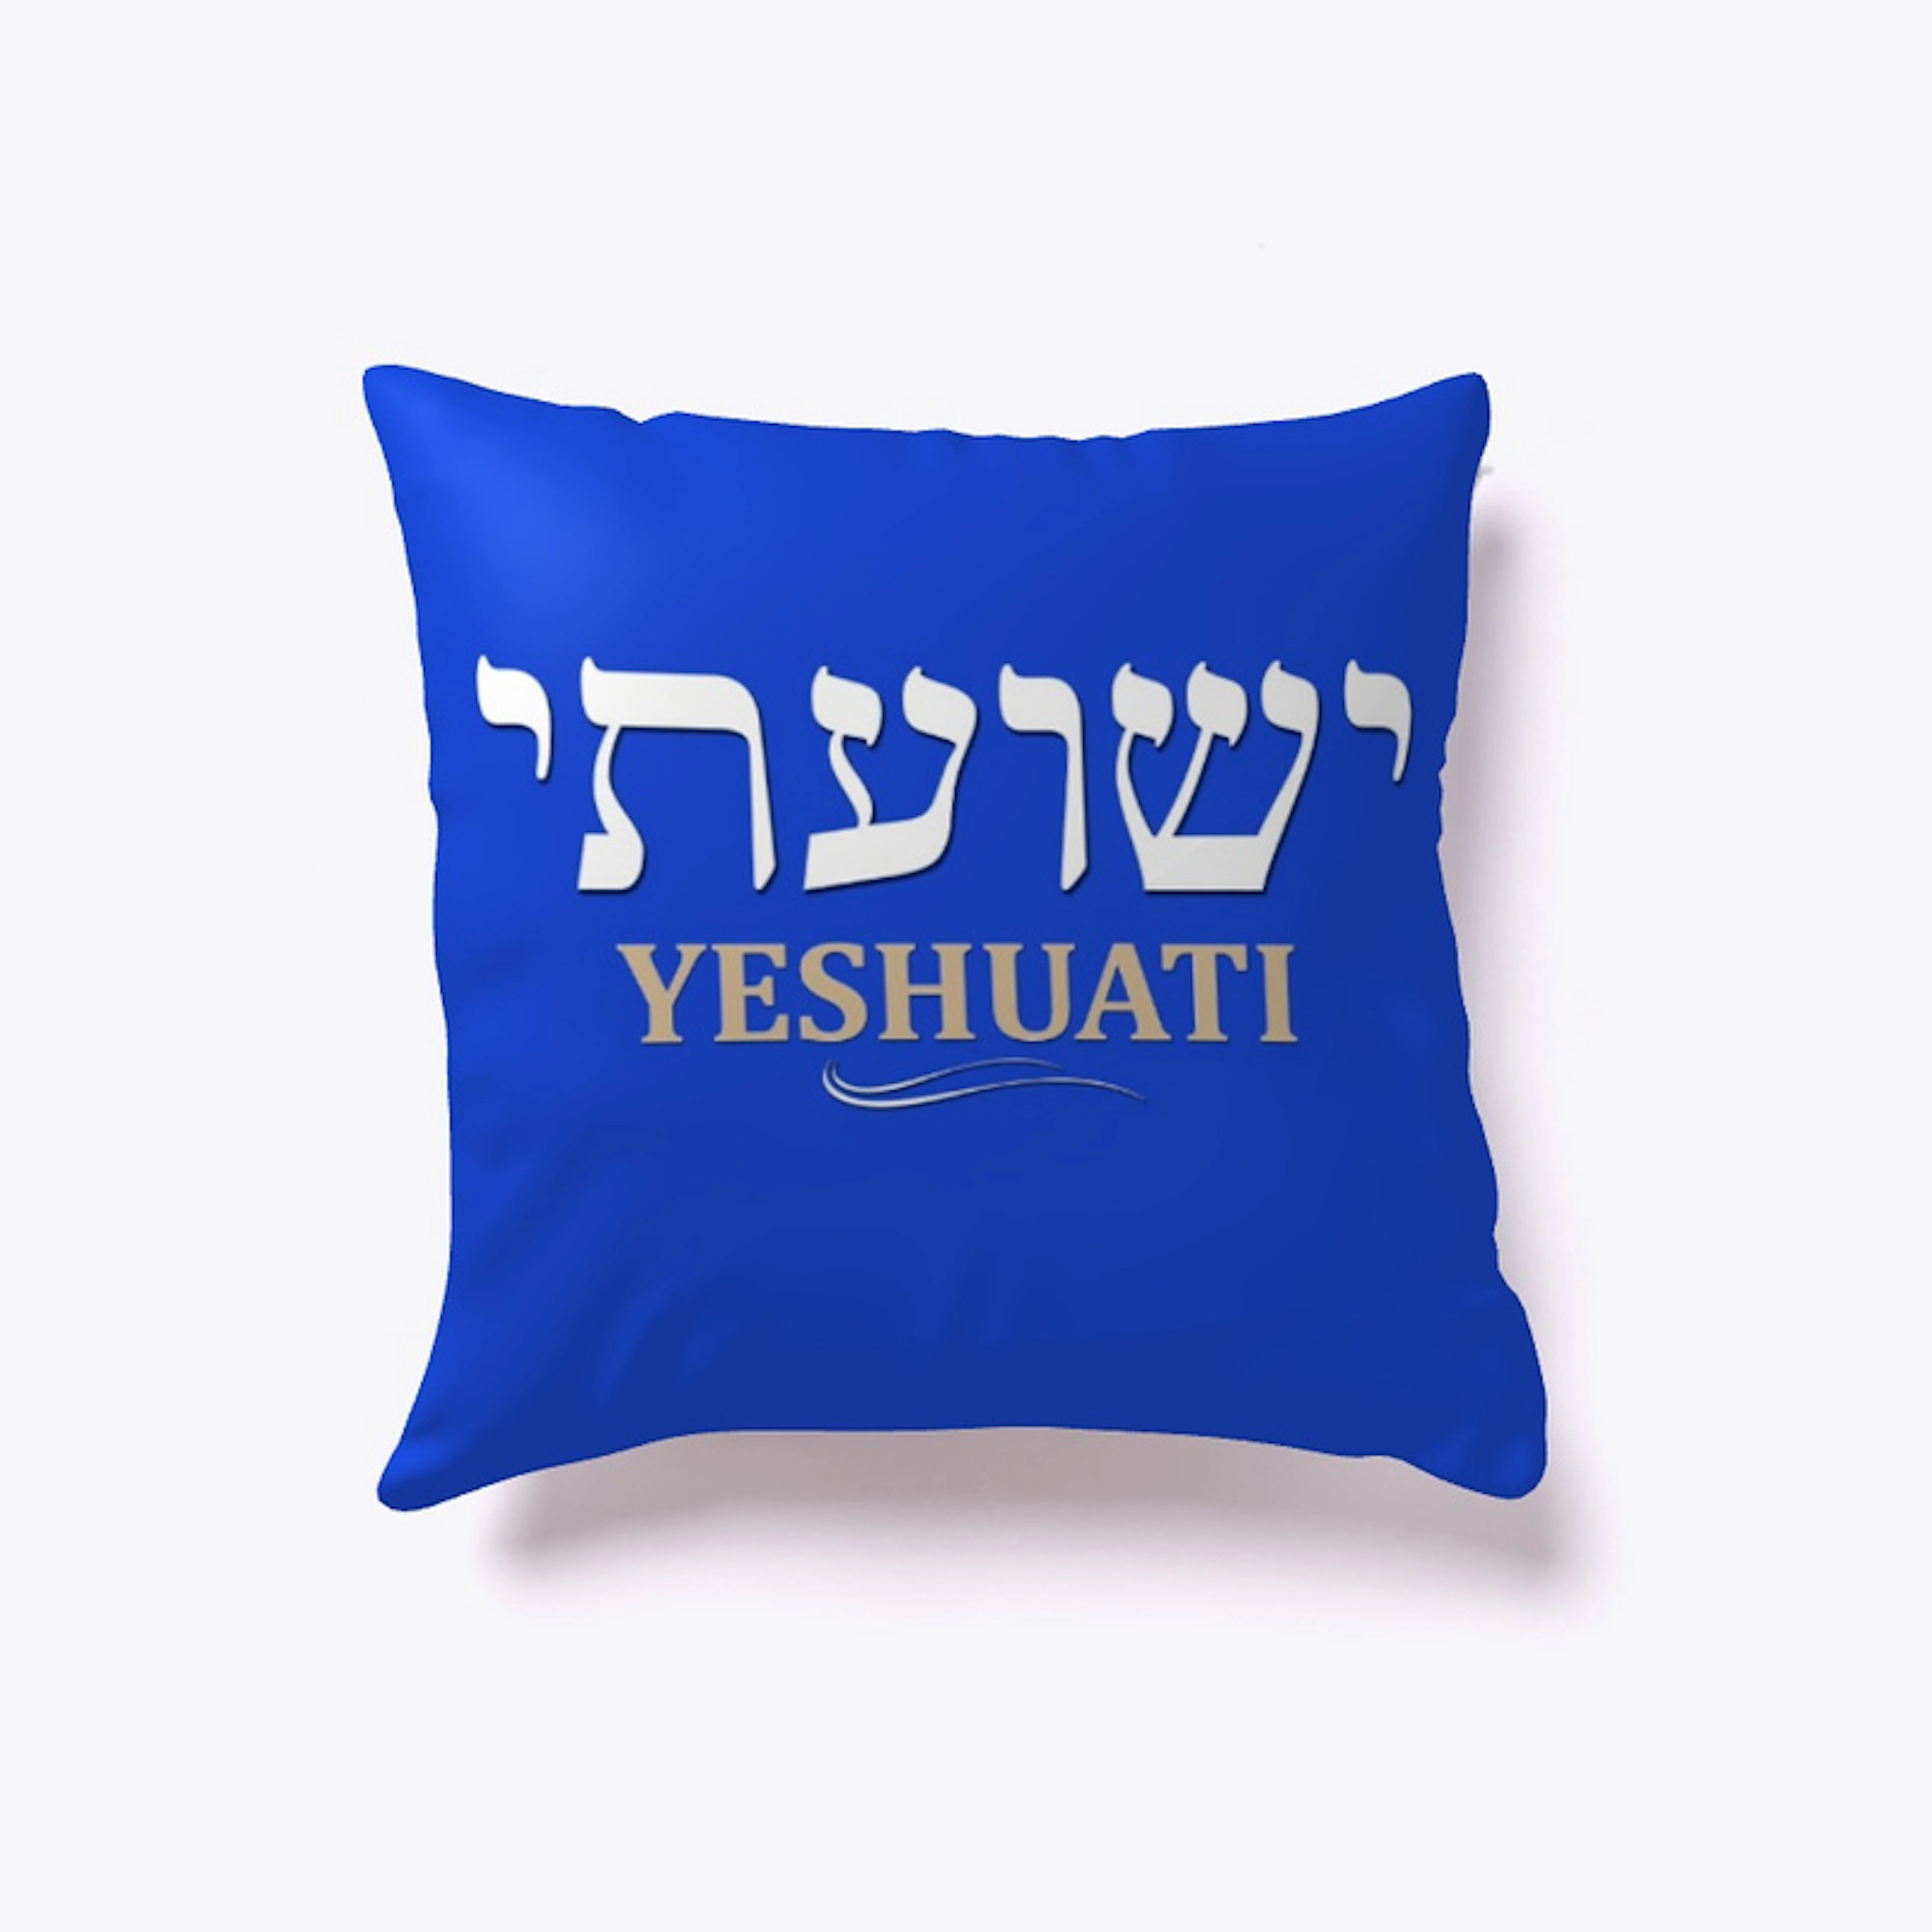 YESHUATI (My Salvation) Hebrew - Pillow